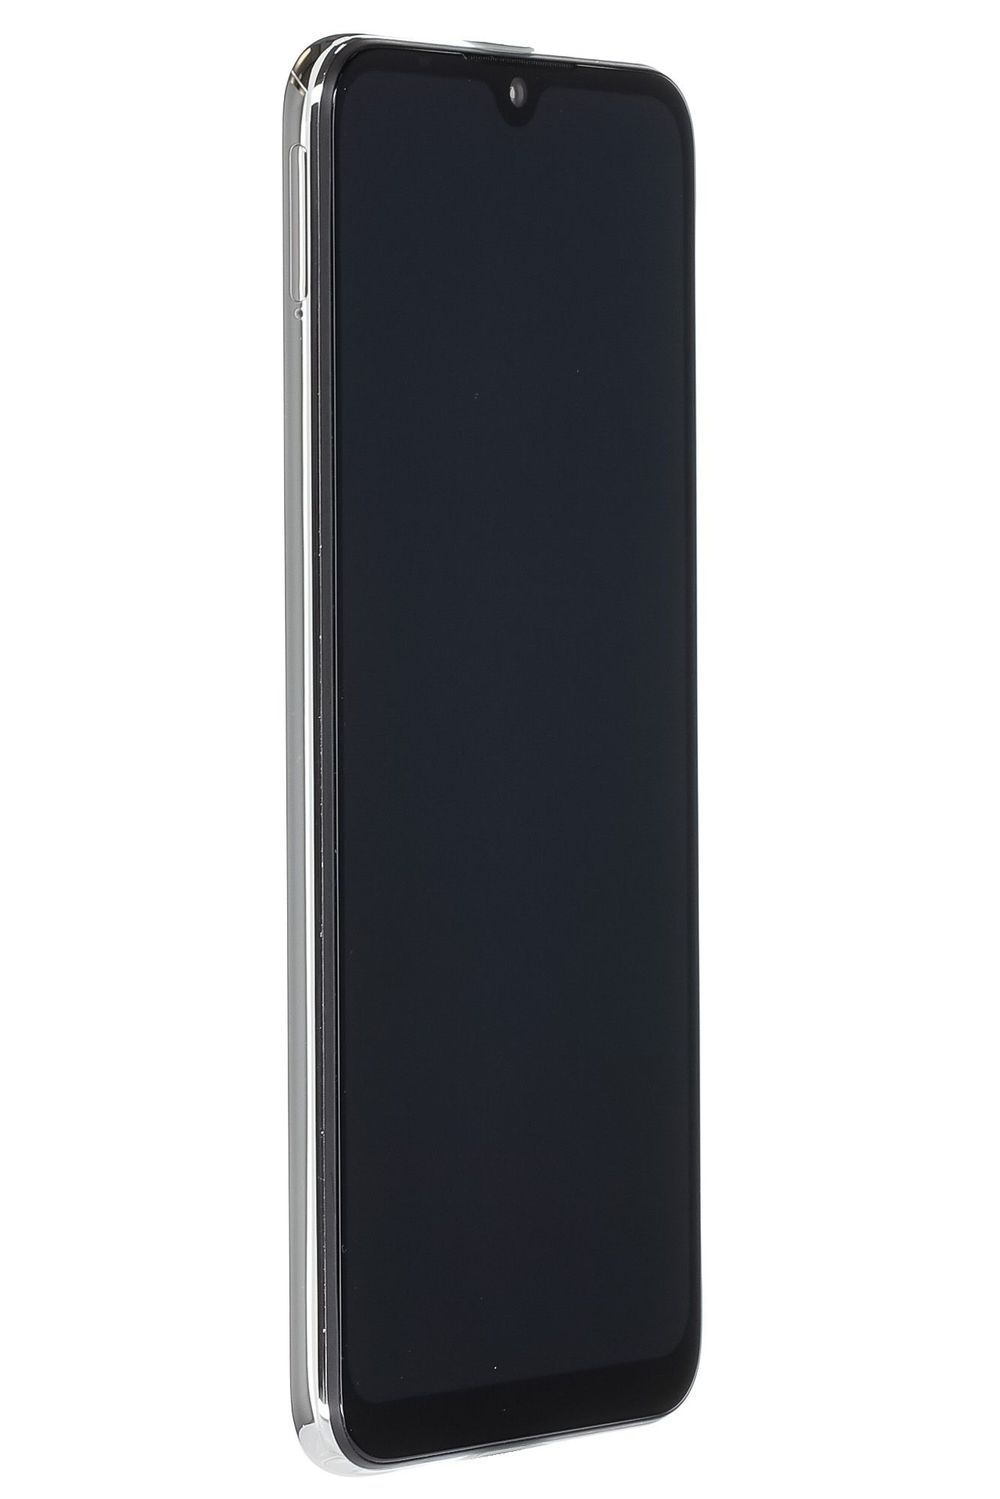 Telefon mobil Xiaomi Mi A3, More Than White, 64 GB, Foarte Bun